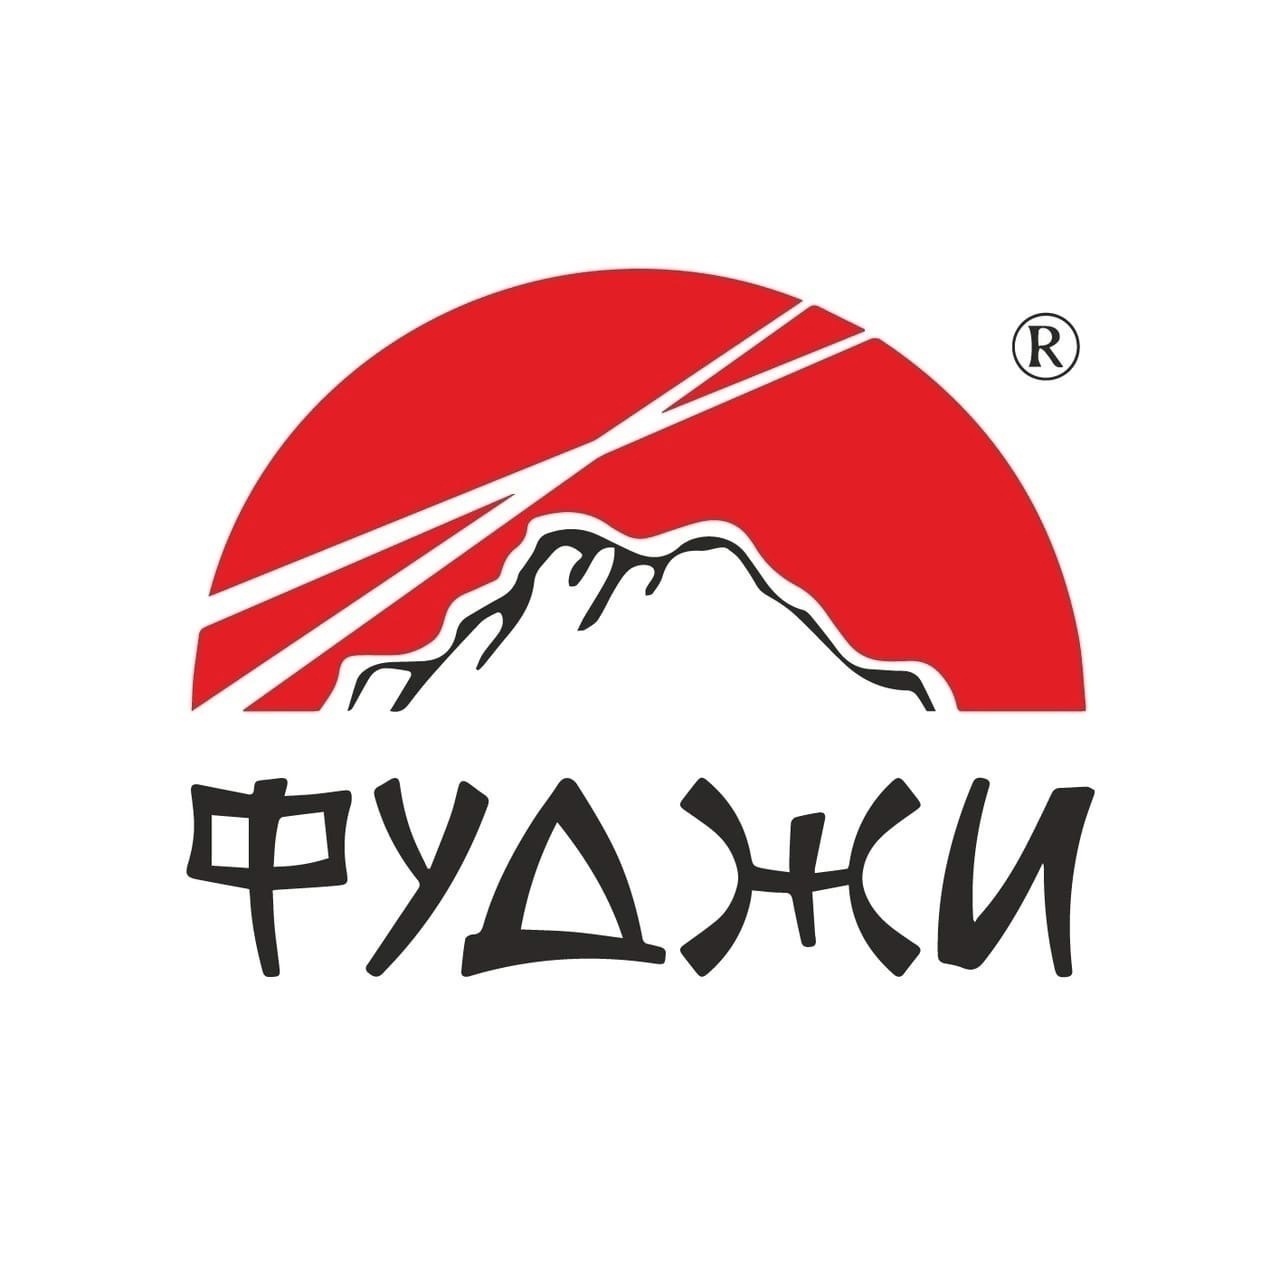 Логотип Фуджи